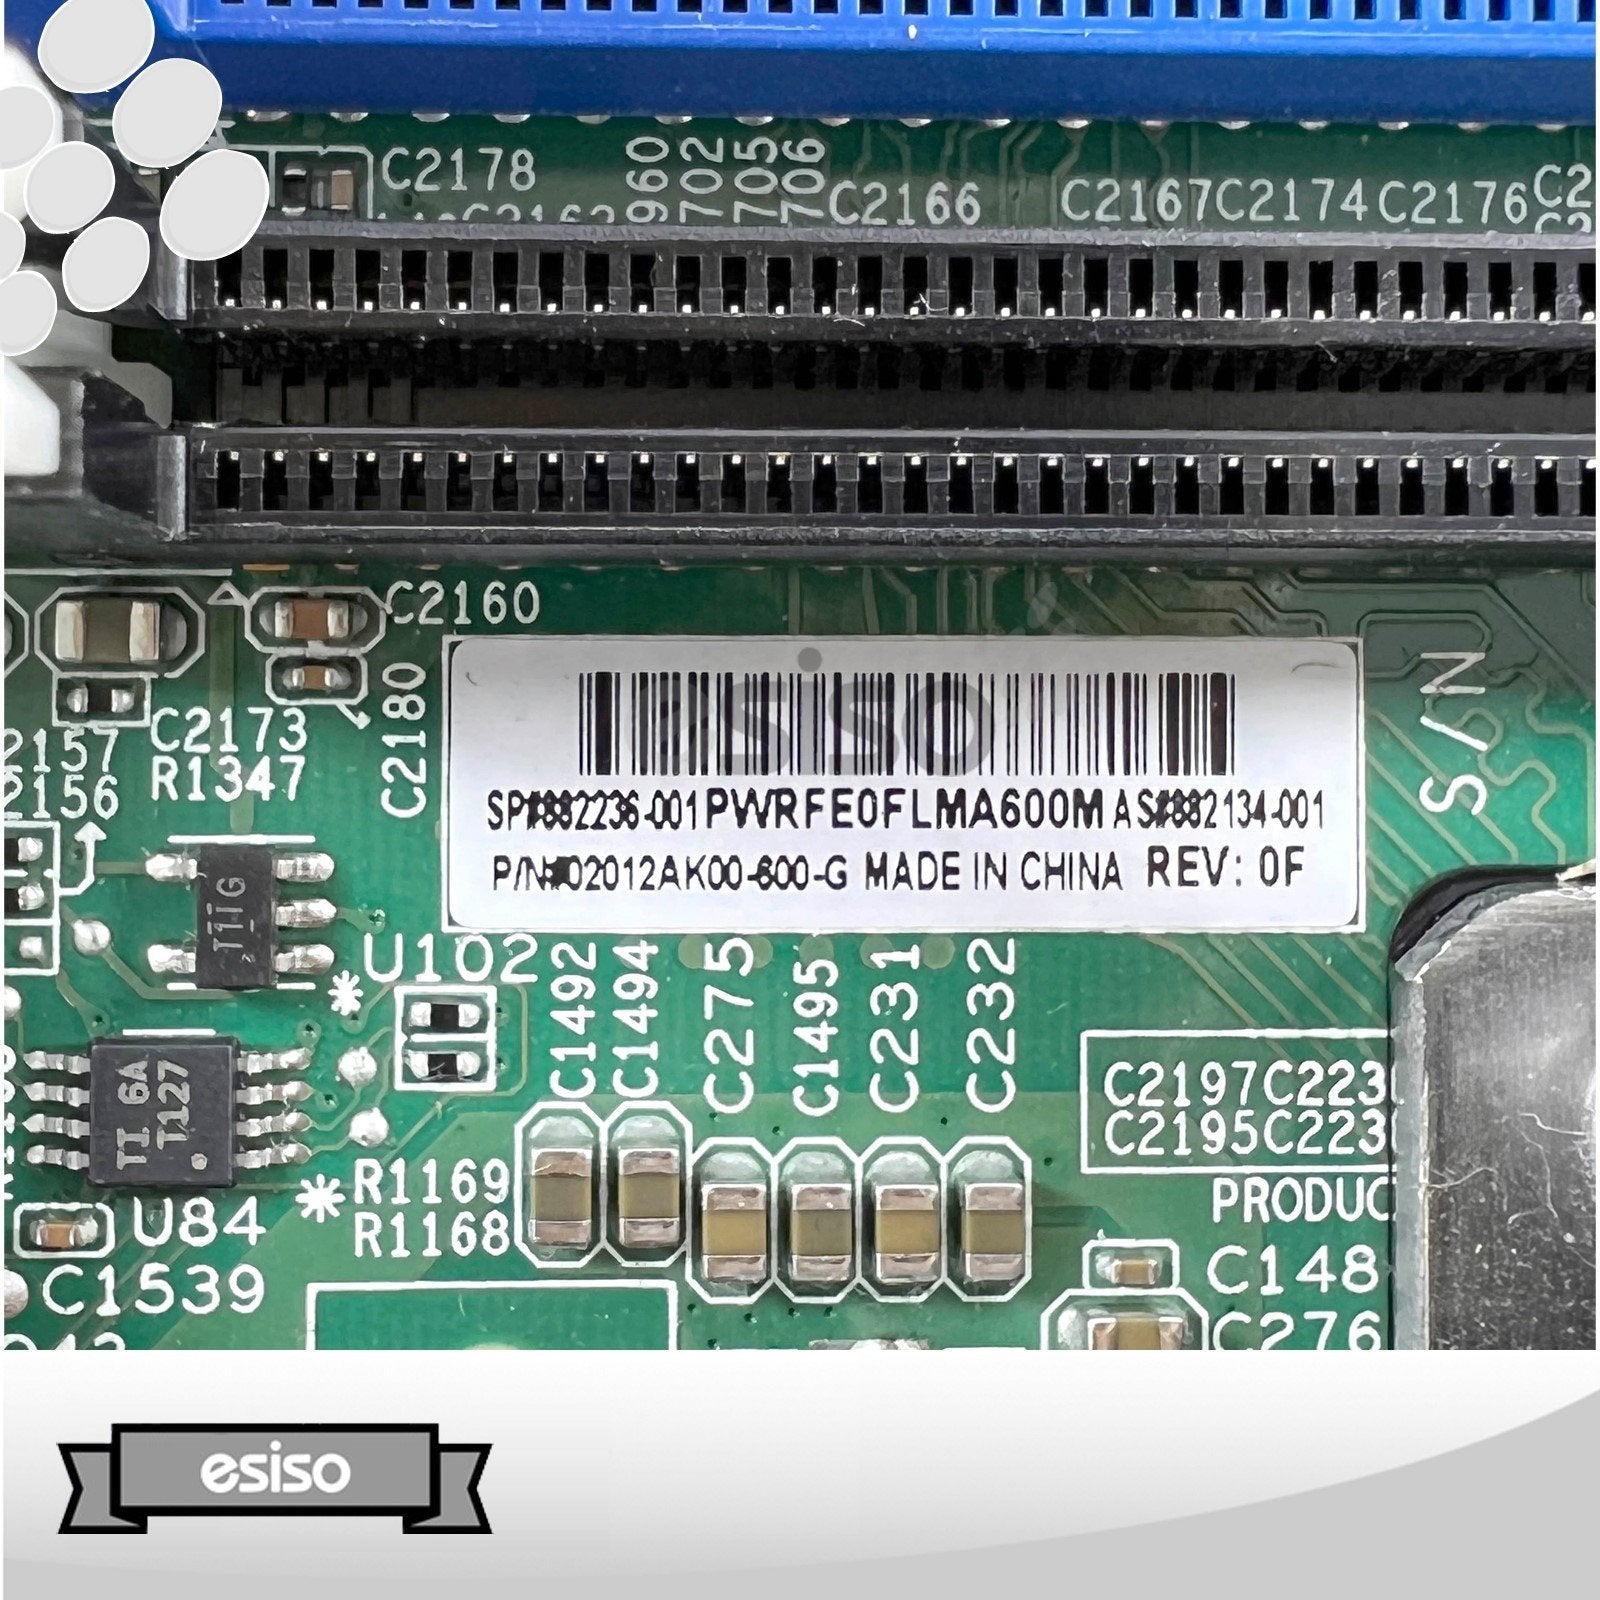 HPE Cloudline CL4100 Gen10 1U DUAL-NODE 4x 20C 6138 2.0GHz 0GB RAM BAREBONE